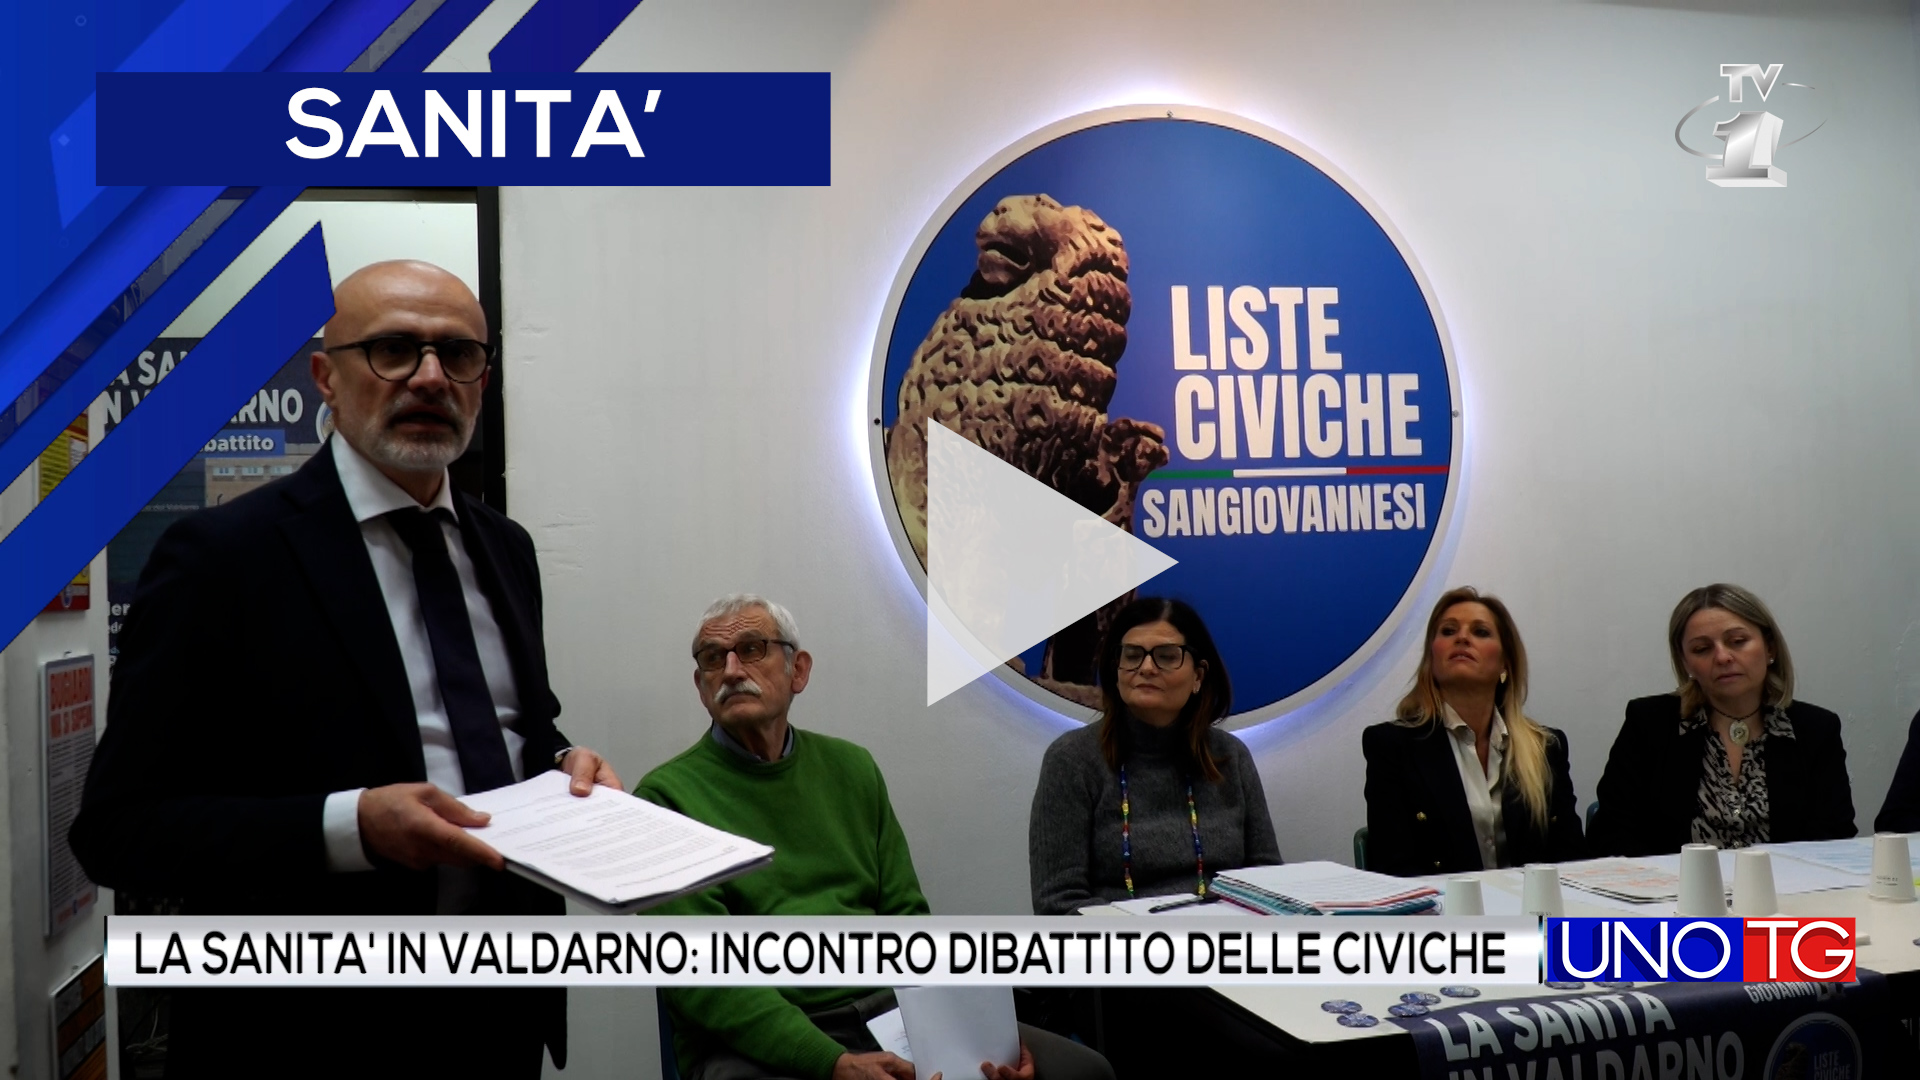 La Sanità in Valdarno: incontro dibattito organizzato dalle Liste Civiche Sangiovannesi